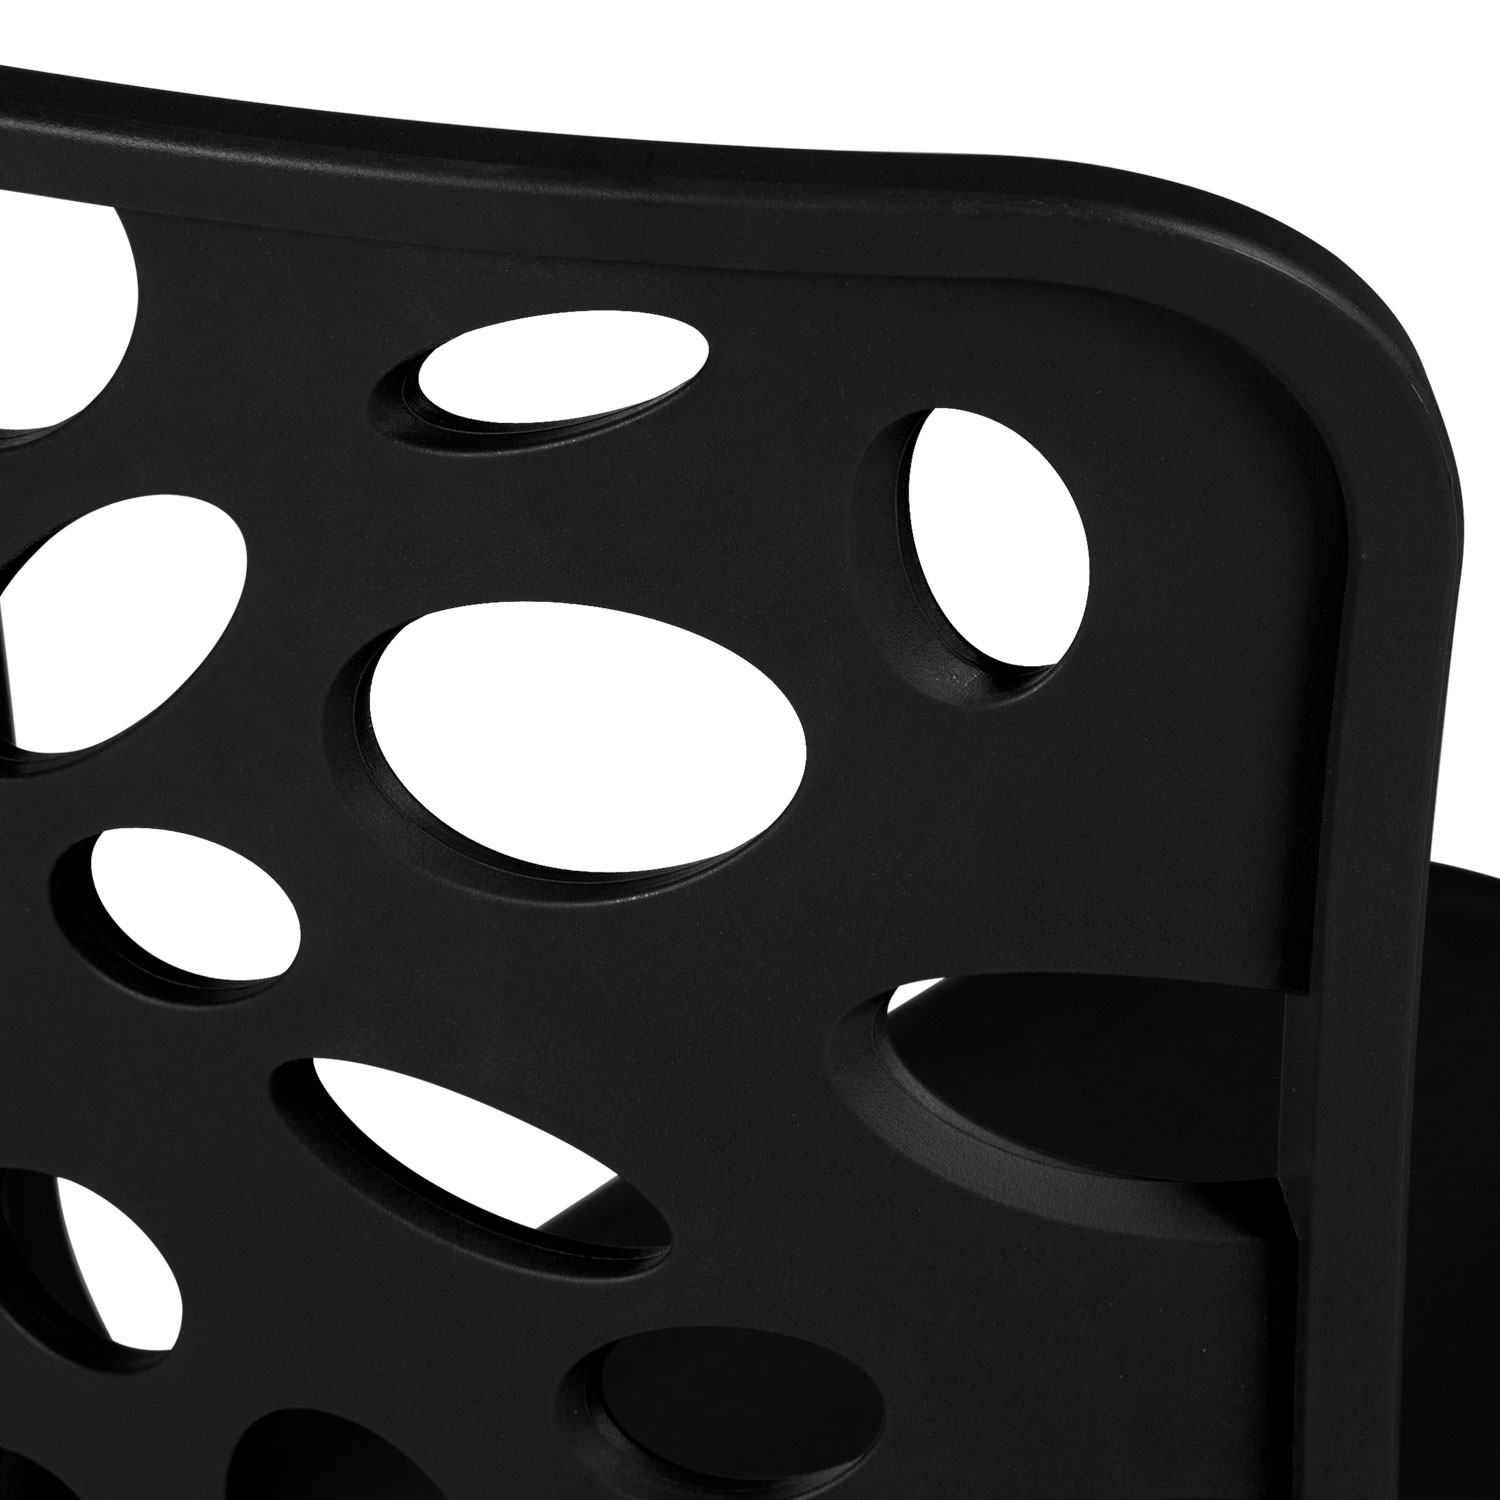 Chaise de jardin Lot de 4 Moderne Noir Chaises design Plastique Chaises exterieur Chaises empilable Chaise de cuisine